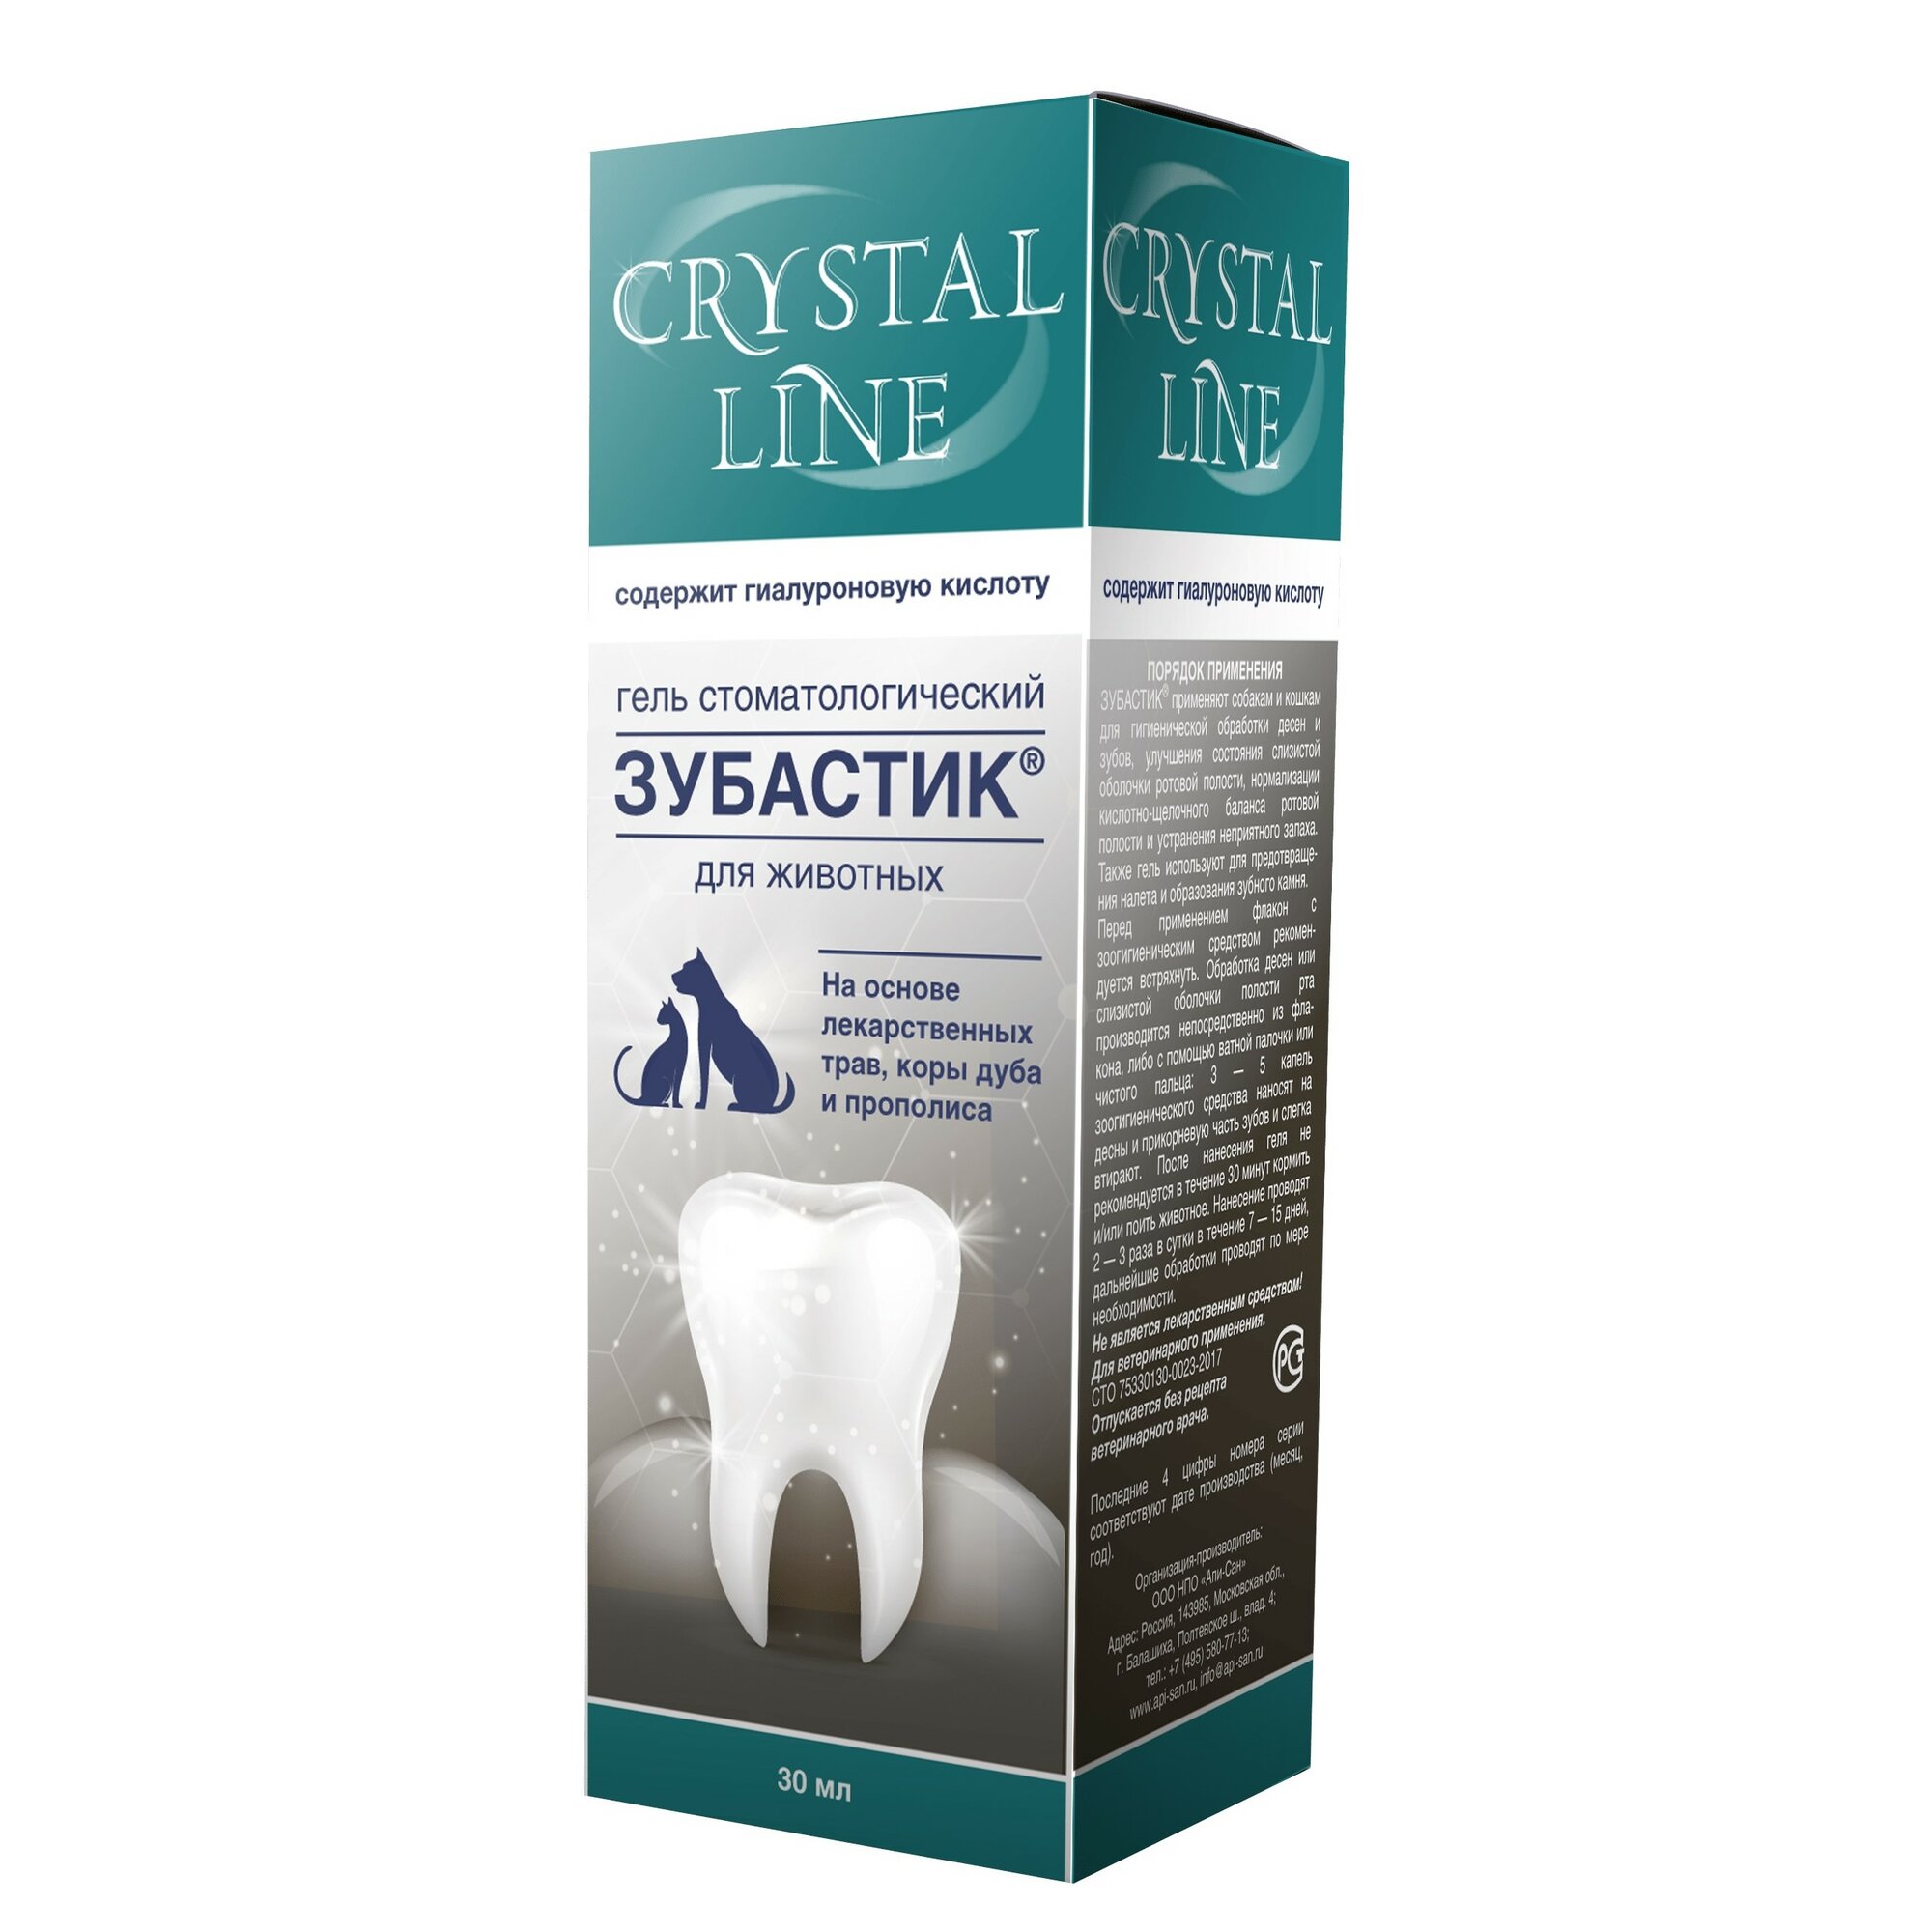 CRYSTAL LINE Зубастик Гель стоматологический для животных